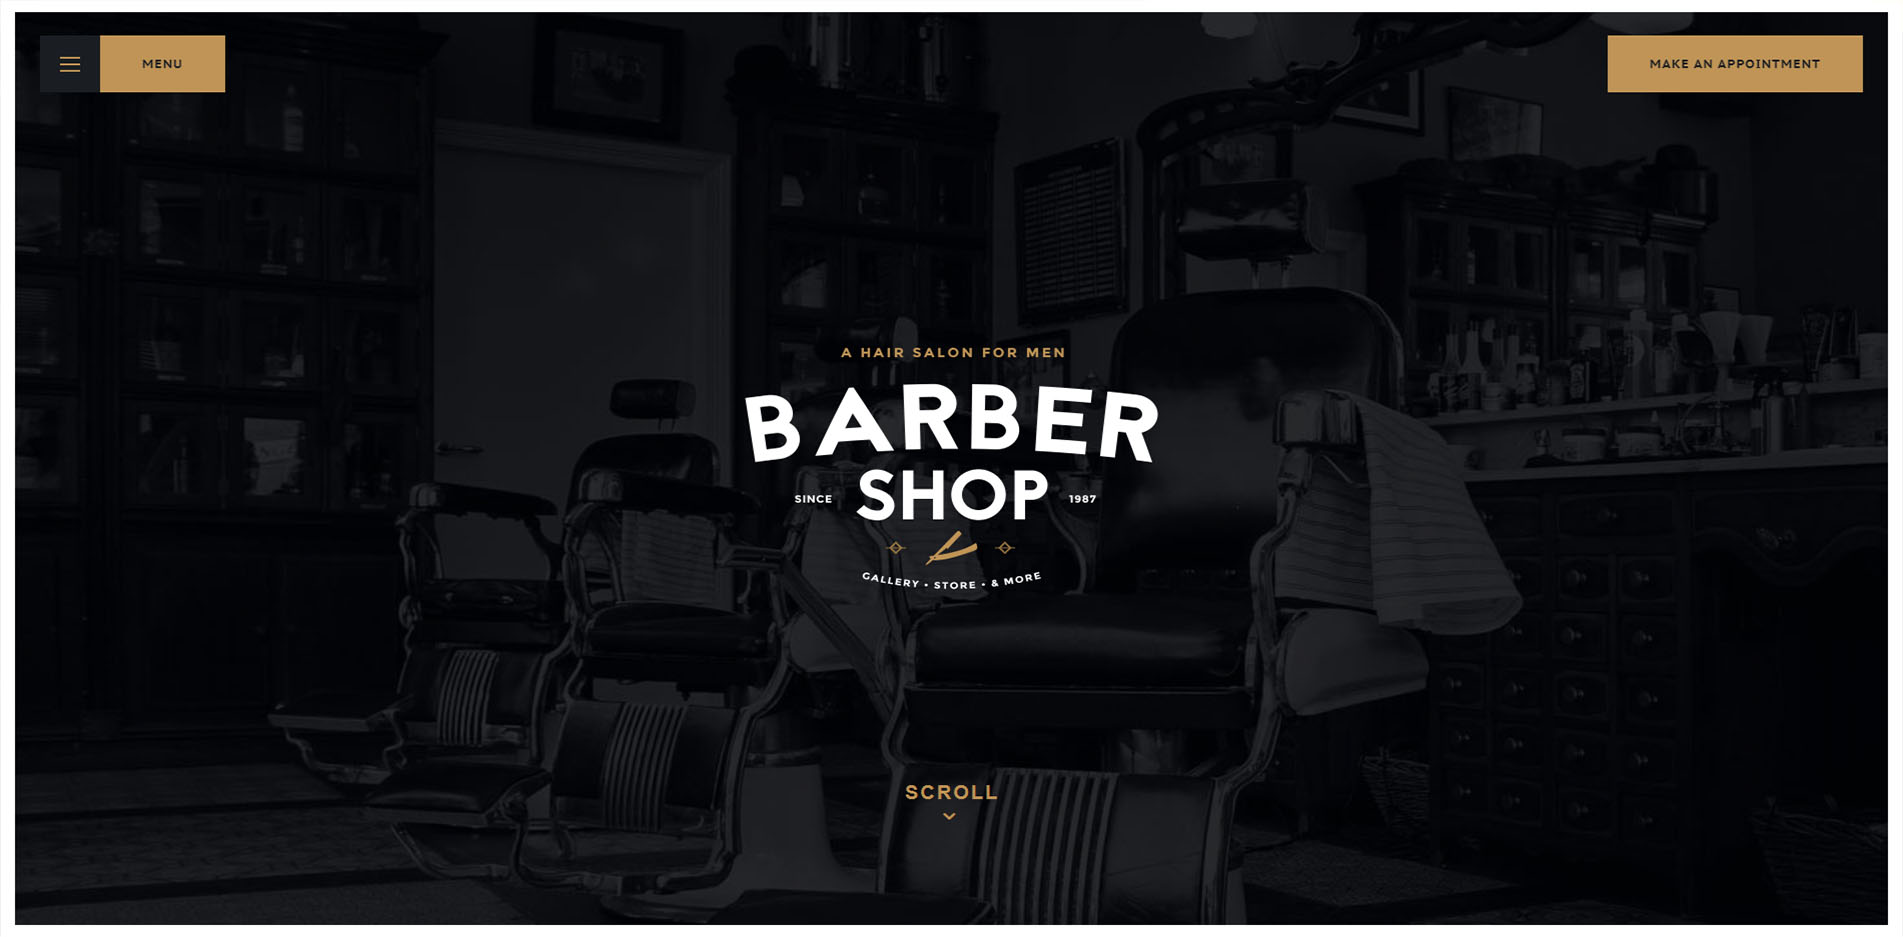 Barber Shop Website Design #1